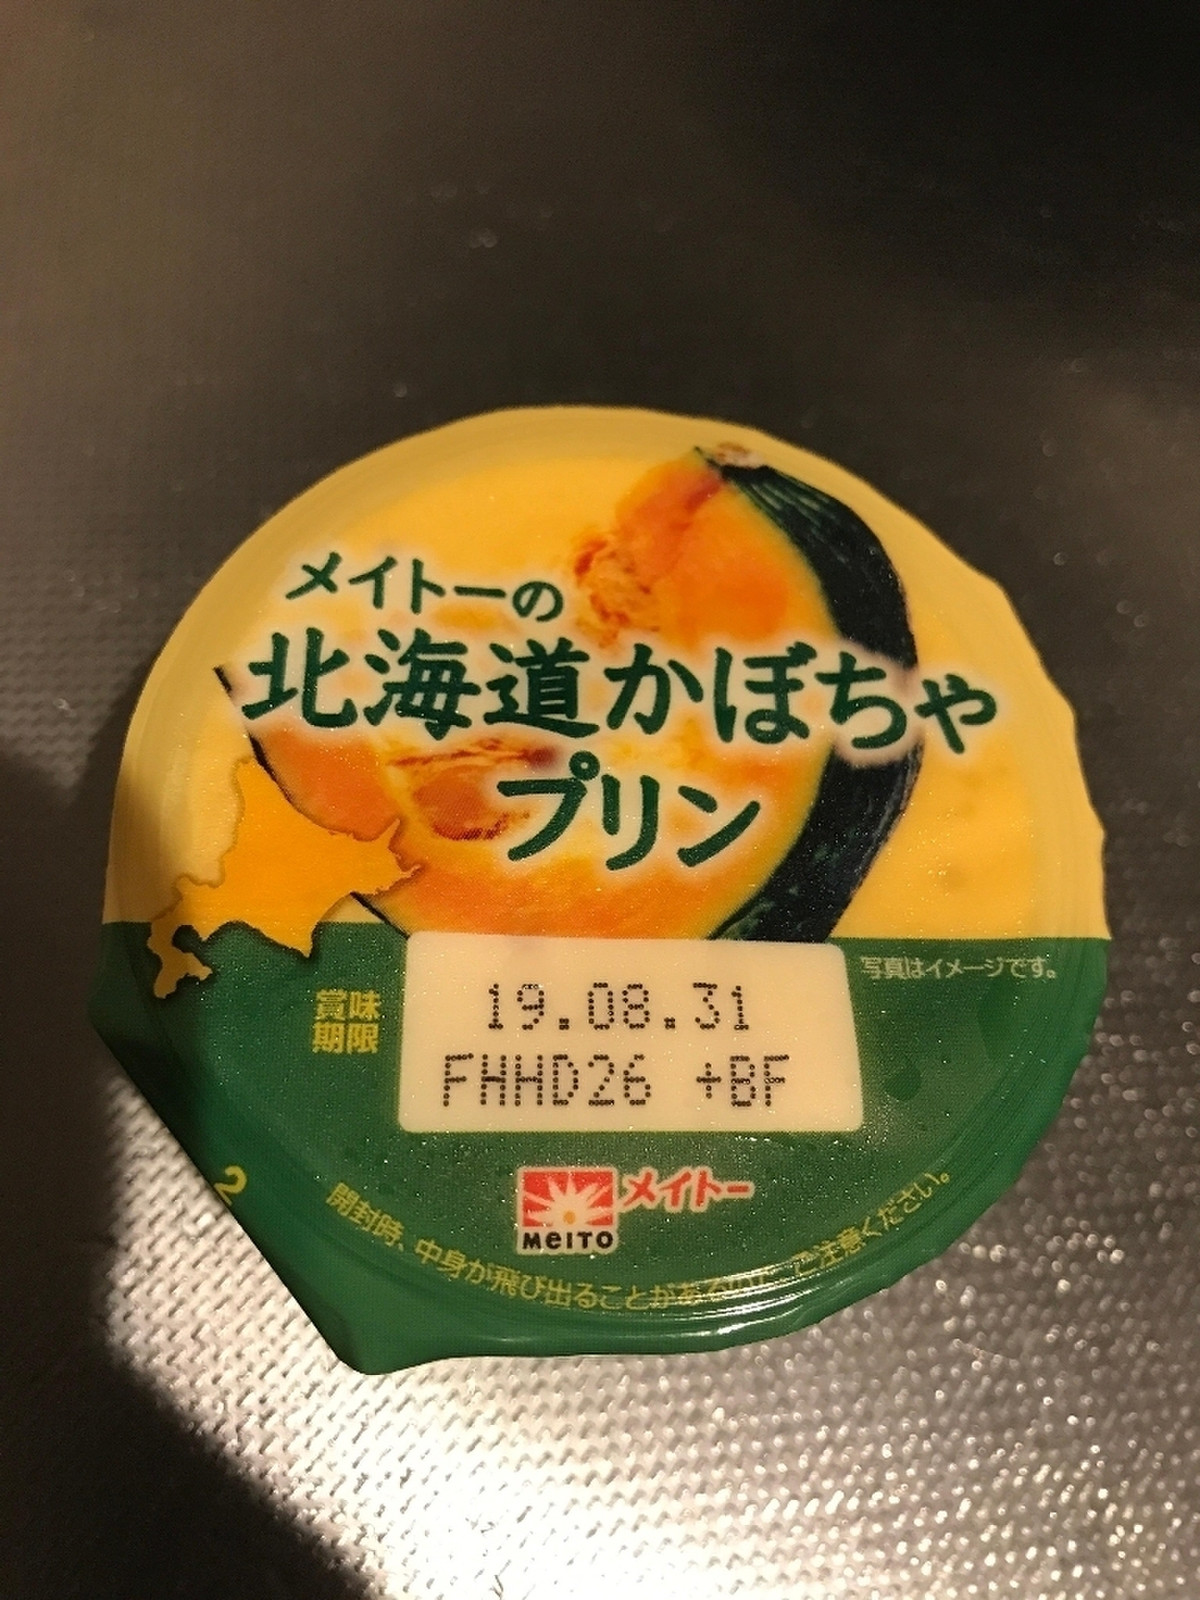 中評価 メイトー メイトーの北海道かぼちゃプリン カップ105g 製造終了 のクチコミ 評価 商品情報 もぐナビ